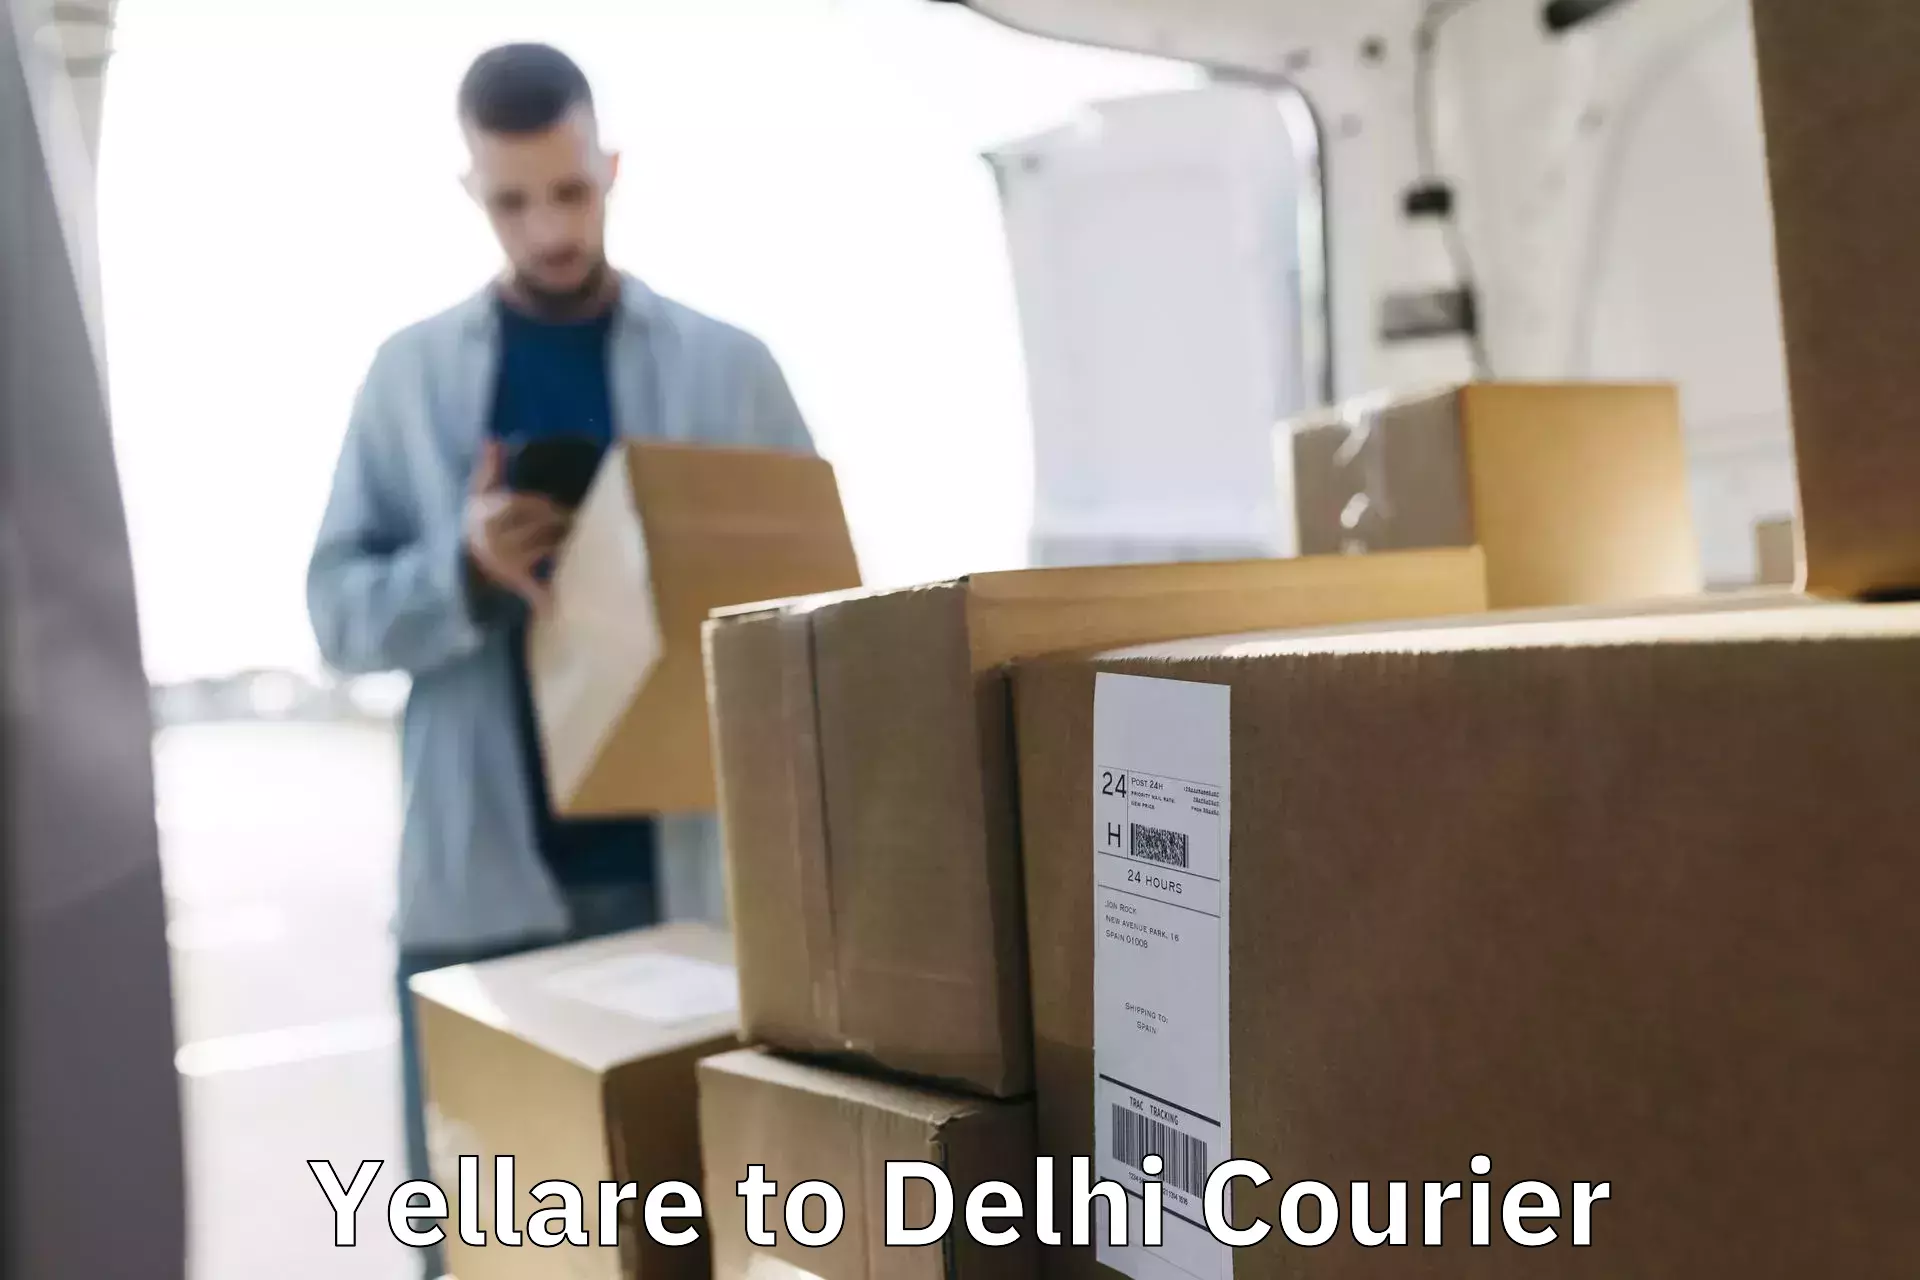 Courier service comparison Yellare to Jamia Millia Islamia New Delhi